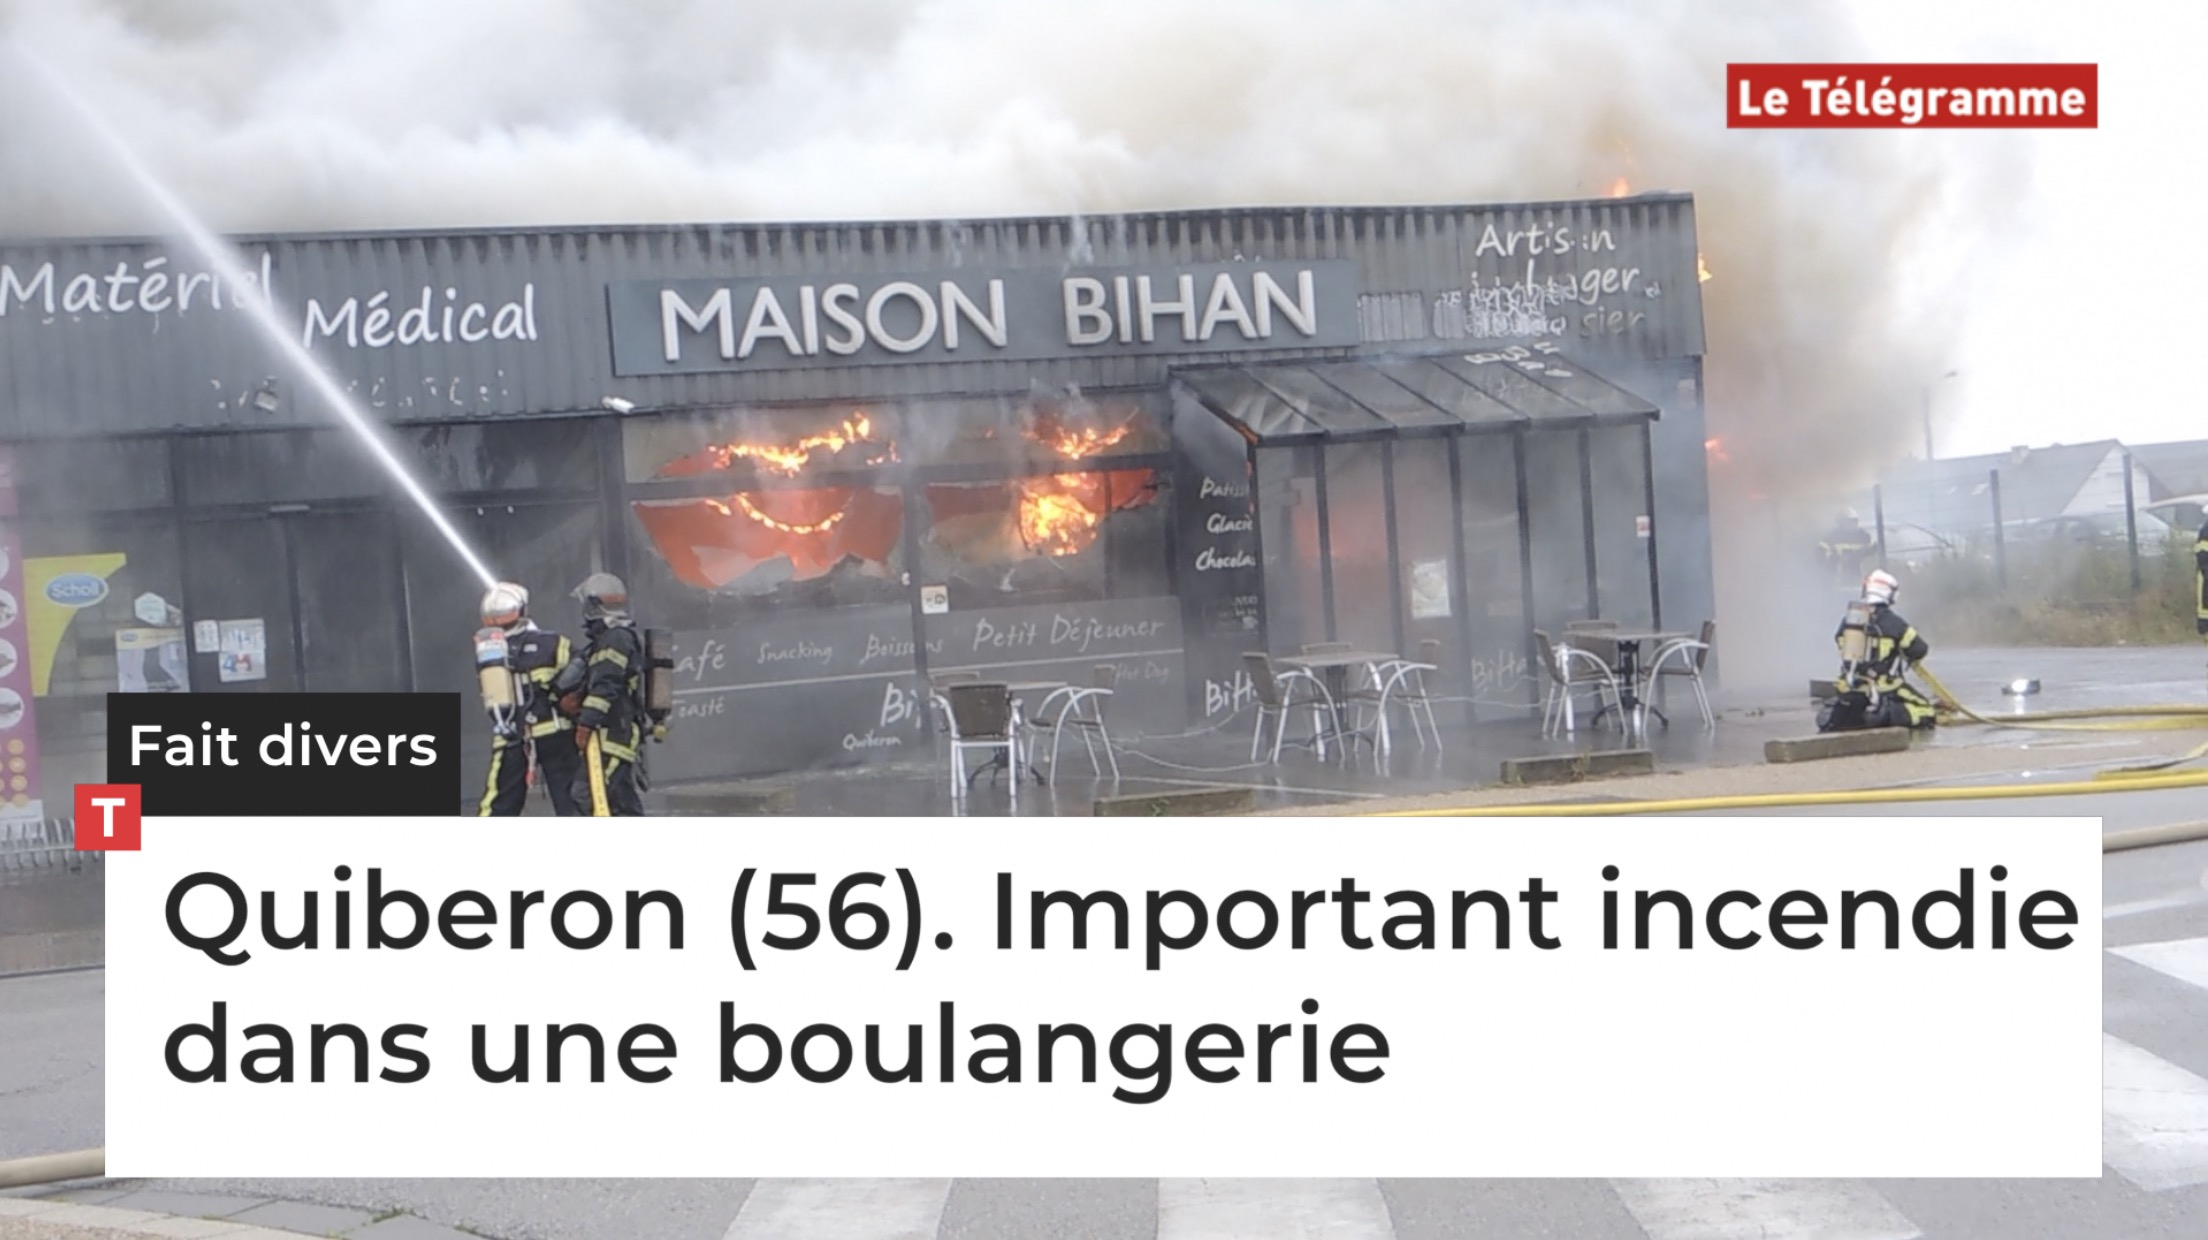 Quiberon (56). Important incendie dans une boulangerie (Le Télégramme)